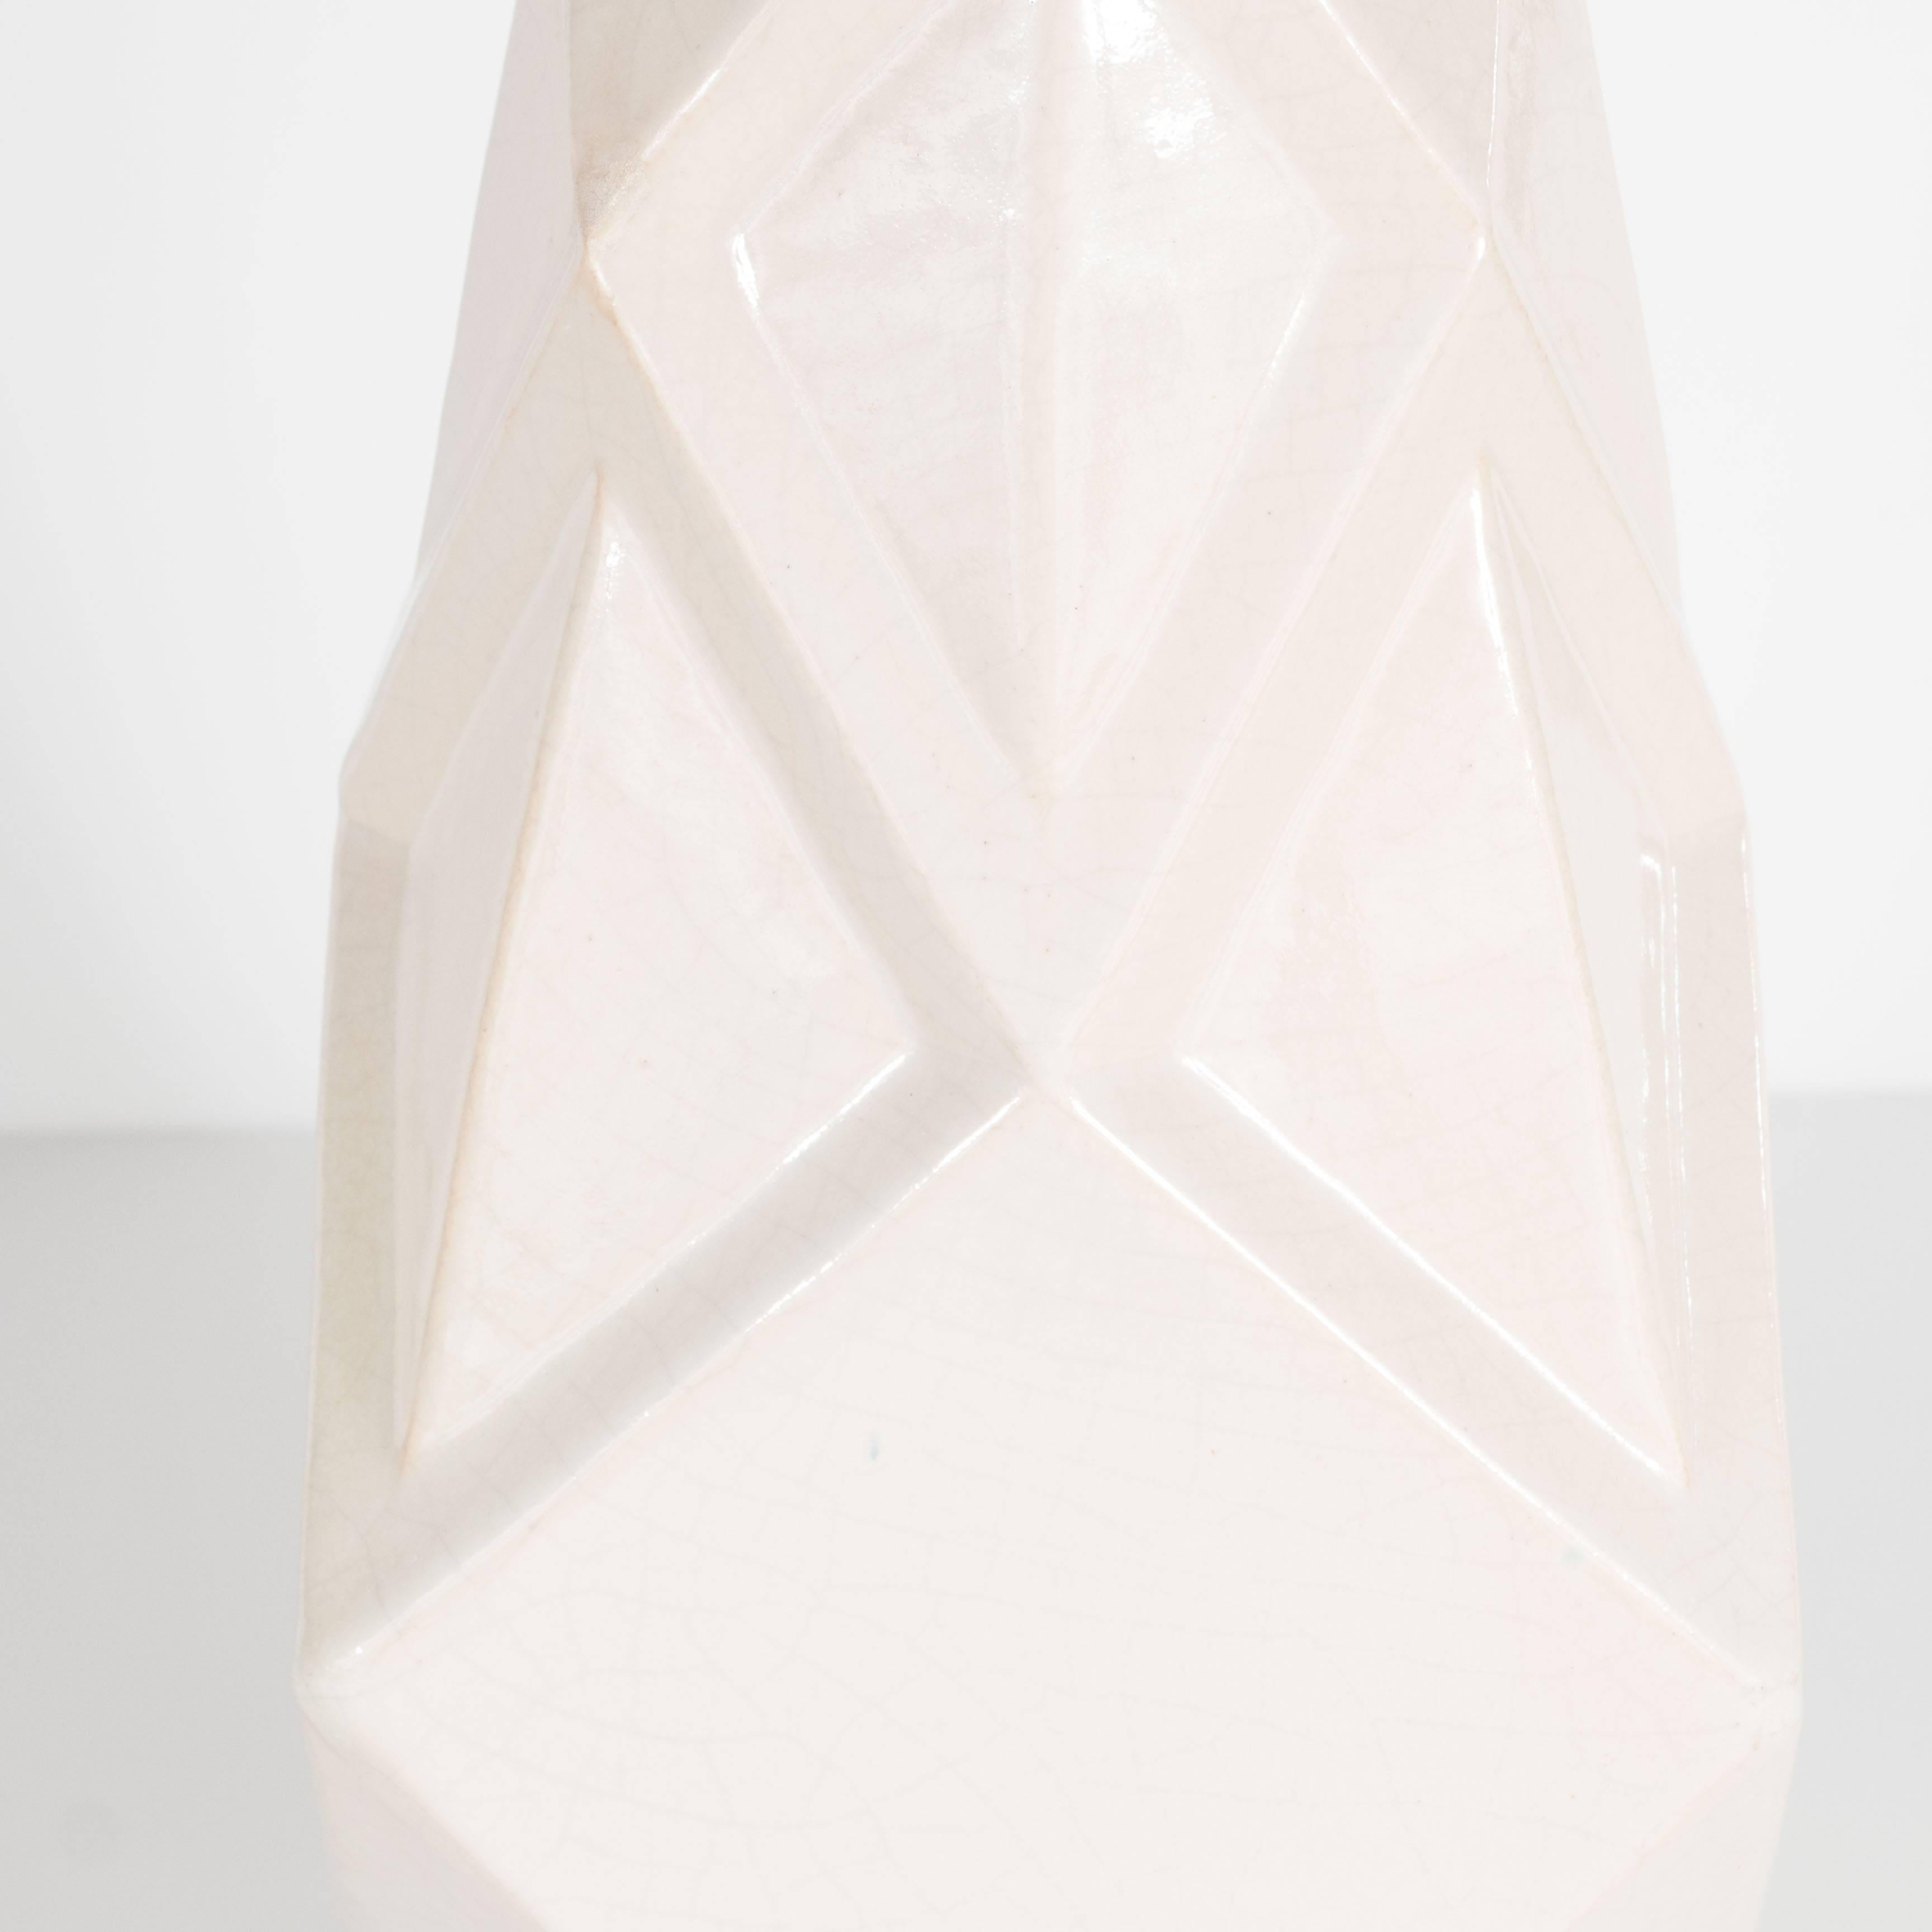 French Art Deco Cubist Style Crackle Crème Ceramic Vase by Henri Delcourt Boulogne